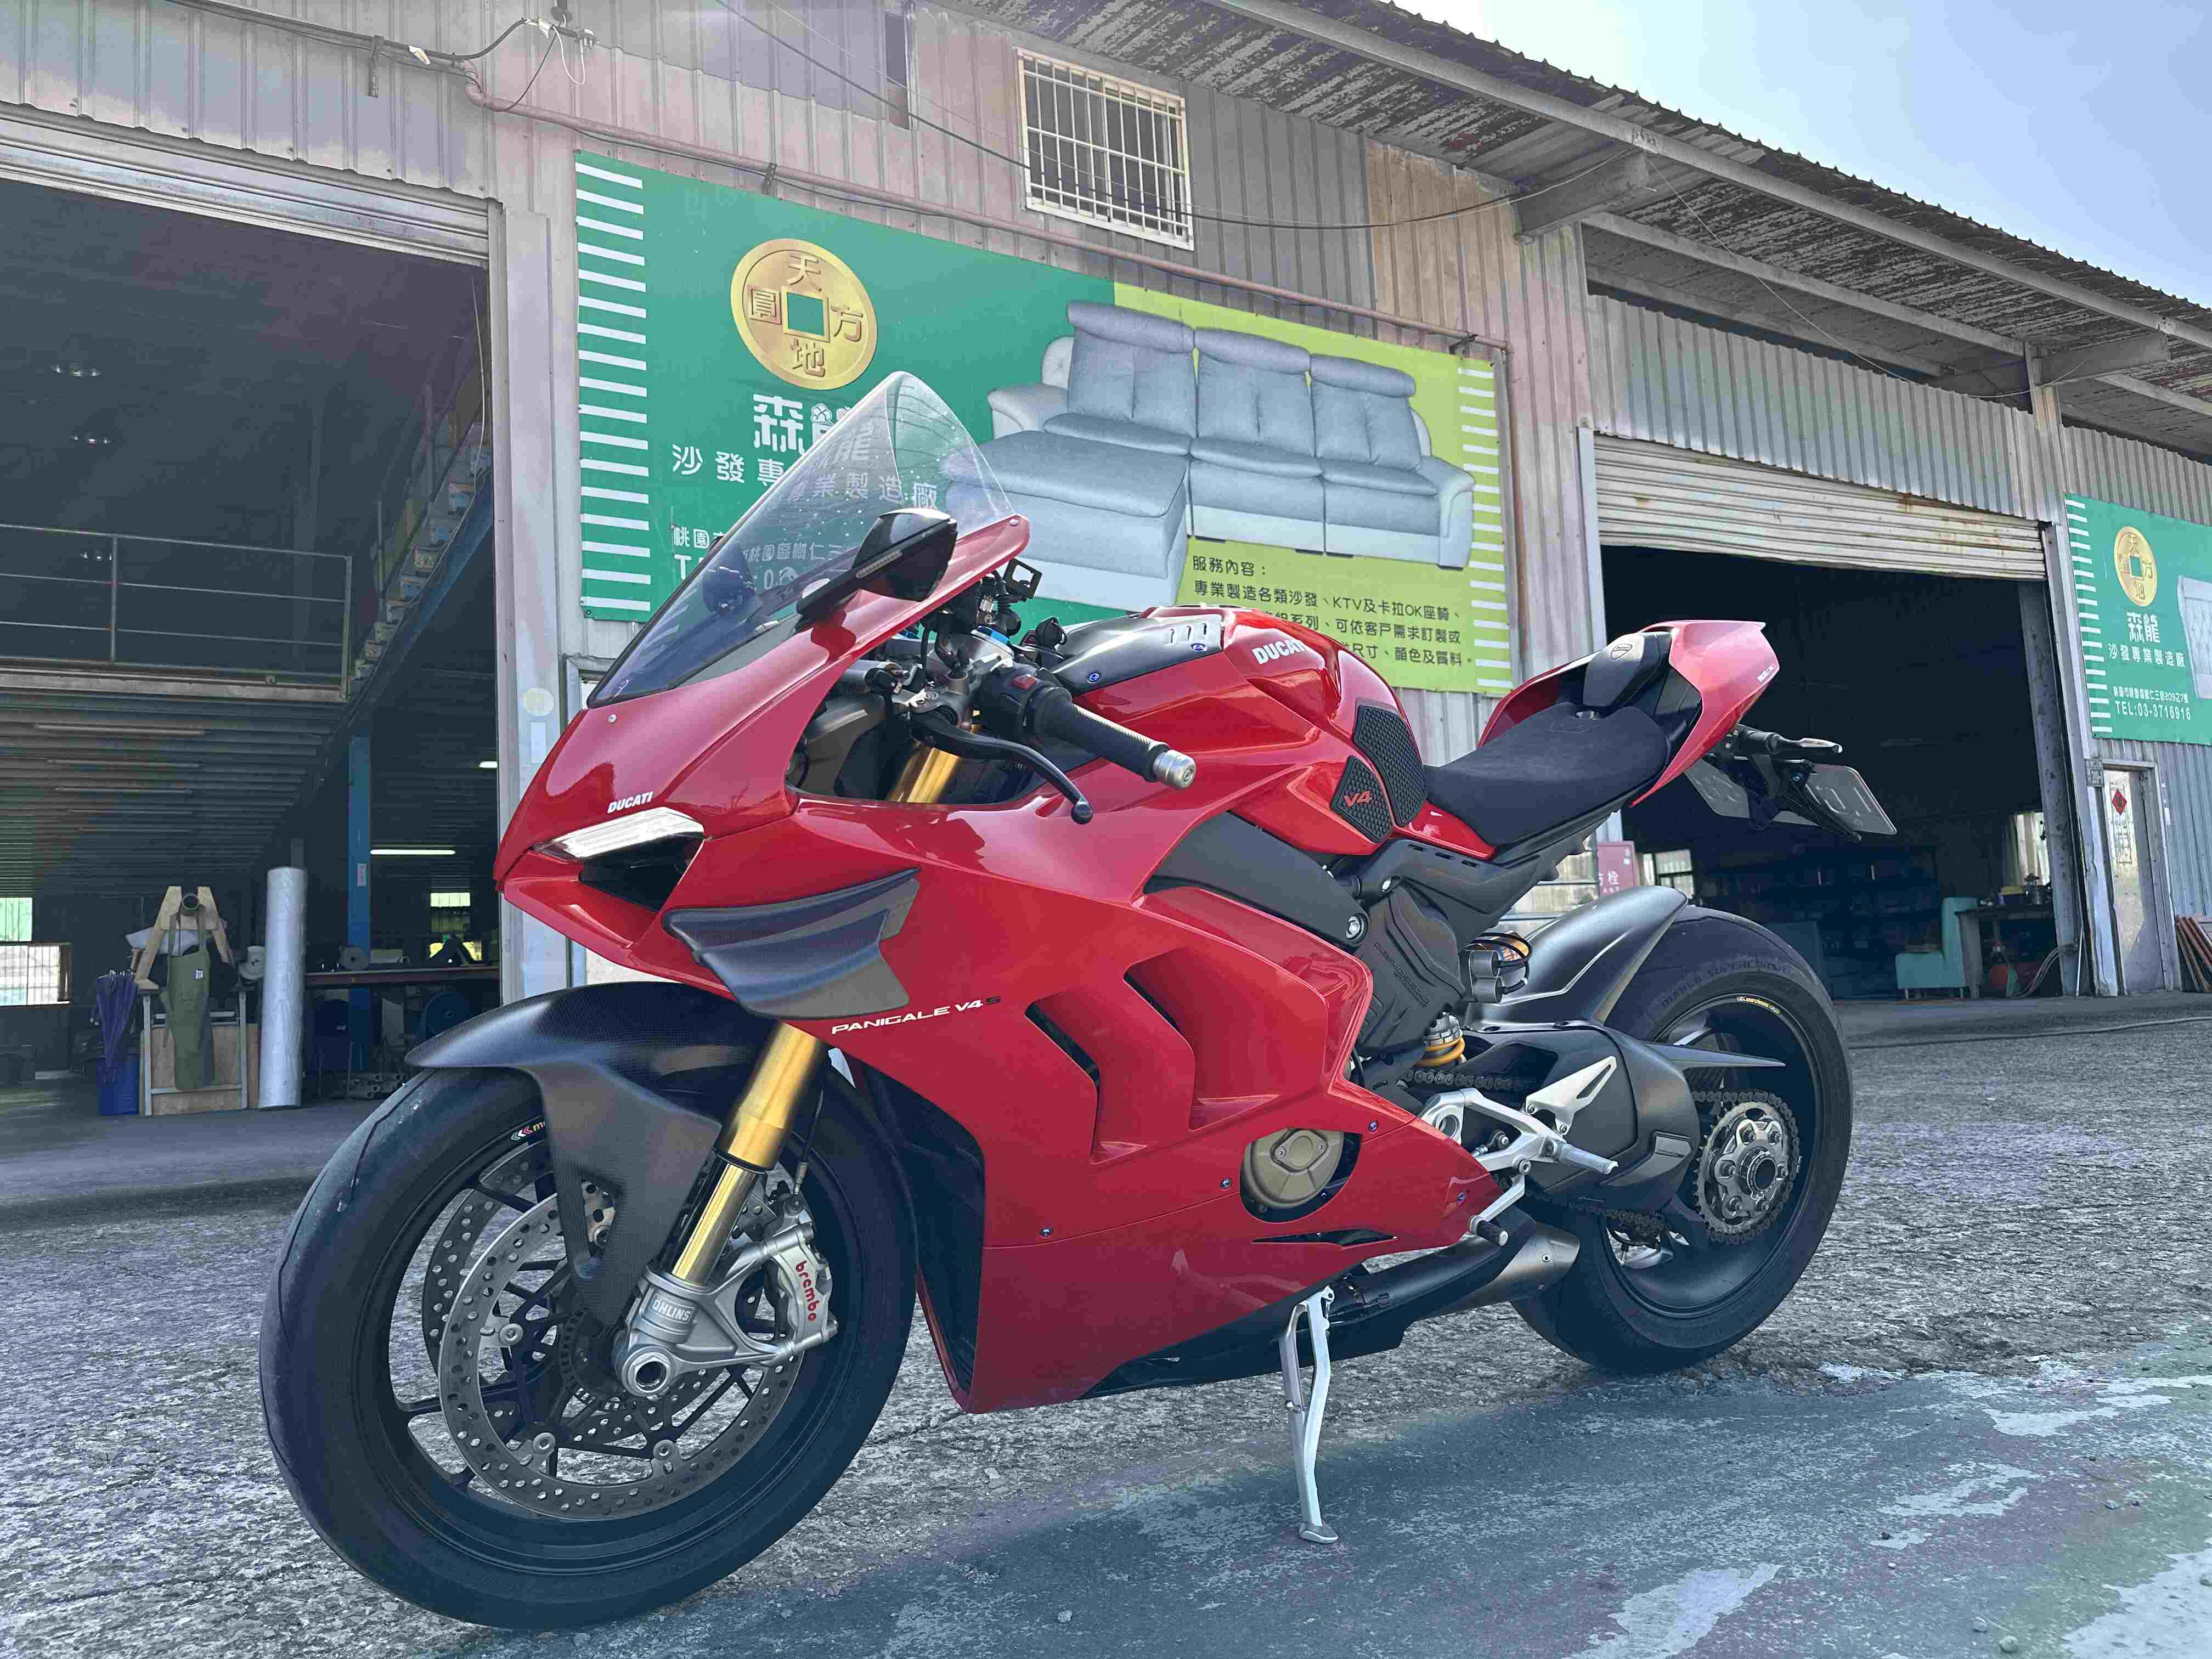 【湯姆重機】DUCATI PANIGALE V4 S - 「Webike-摩托車市」 湯姆重機 2021 Ducati Panigale V4S 公司車